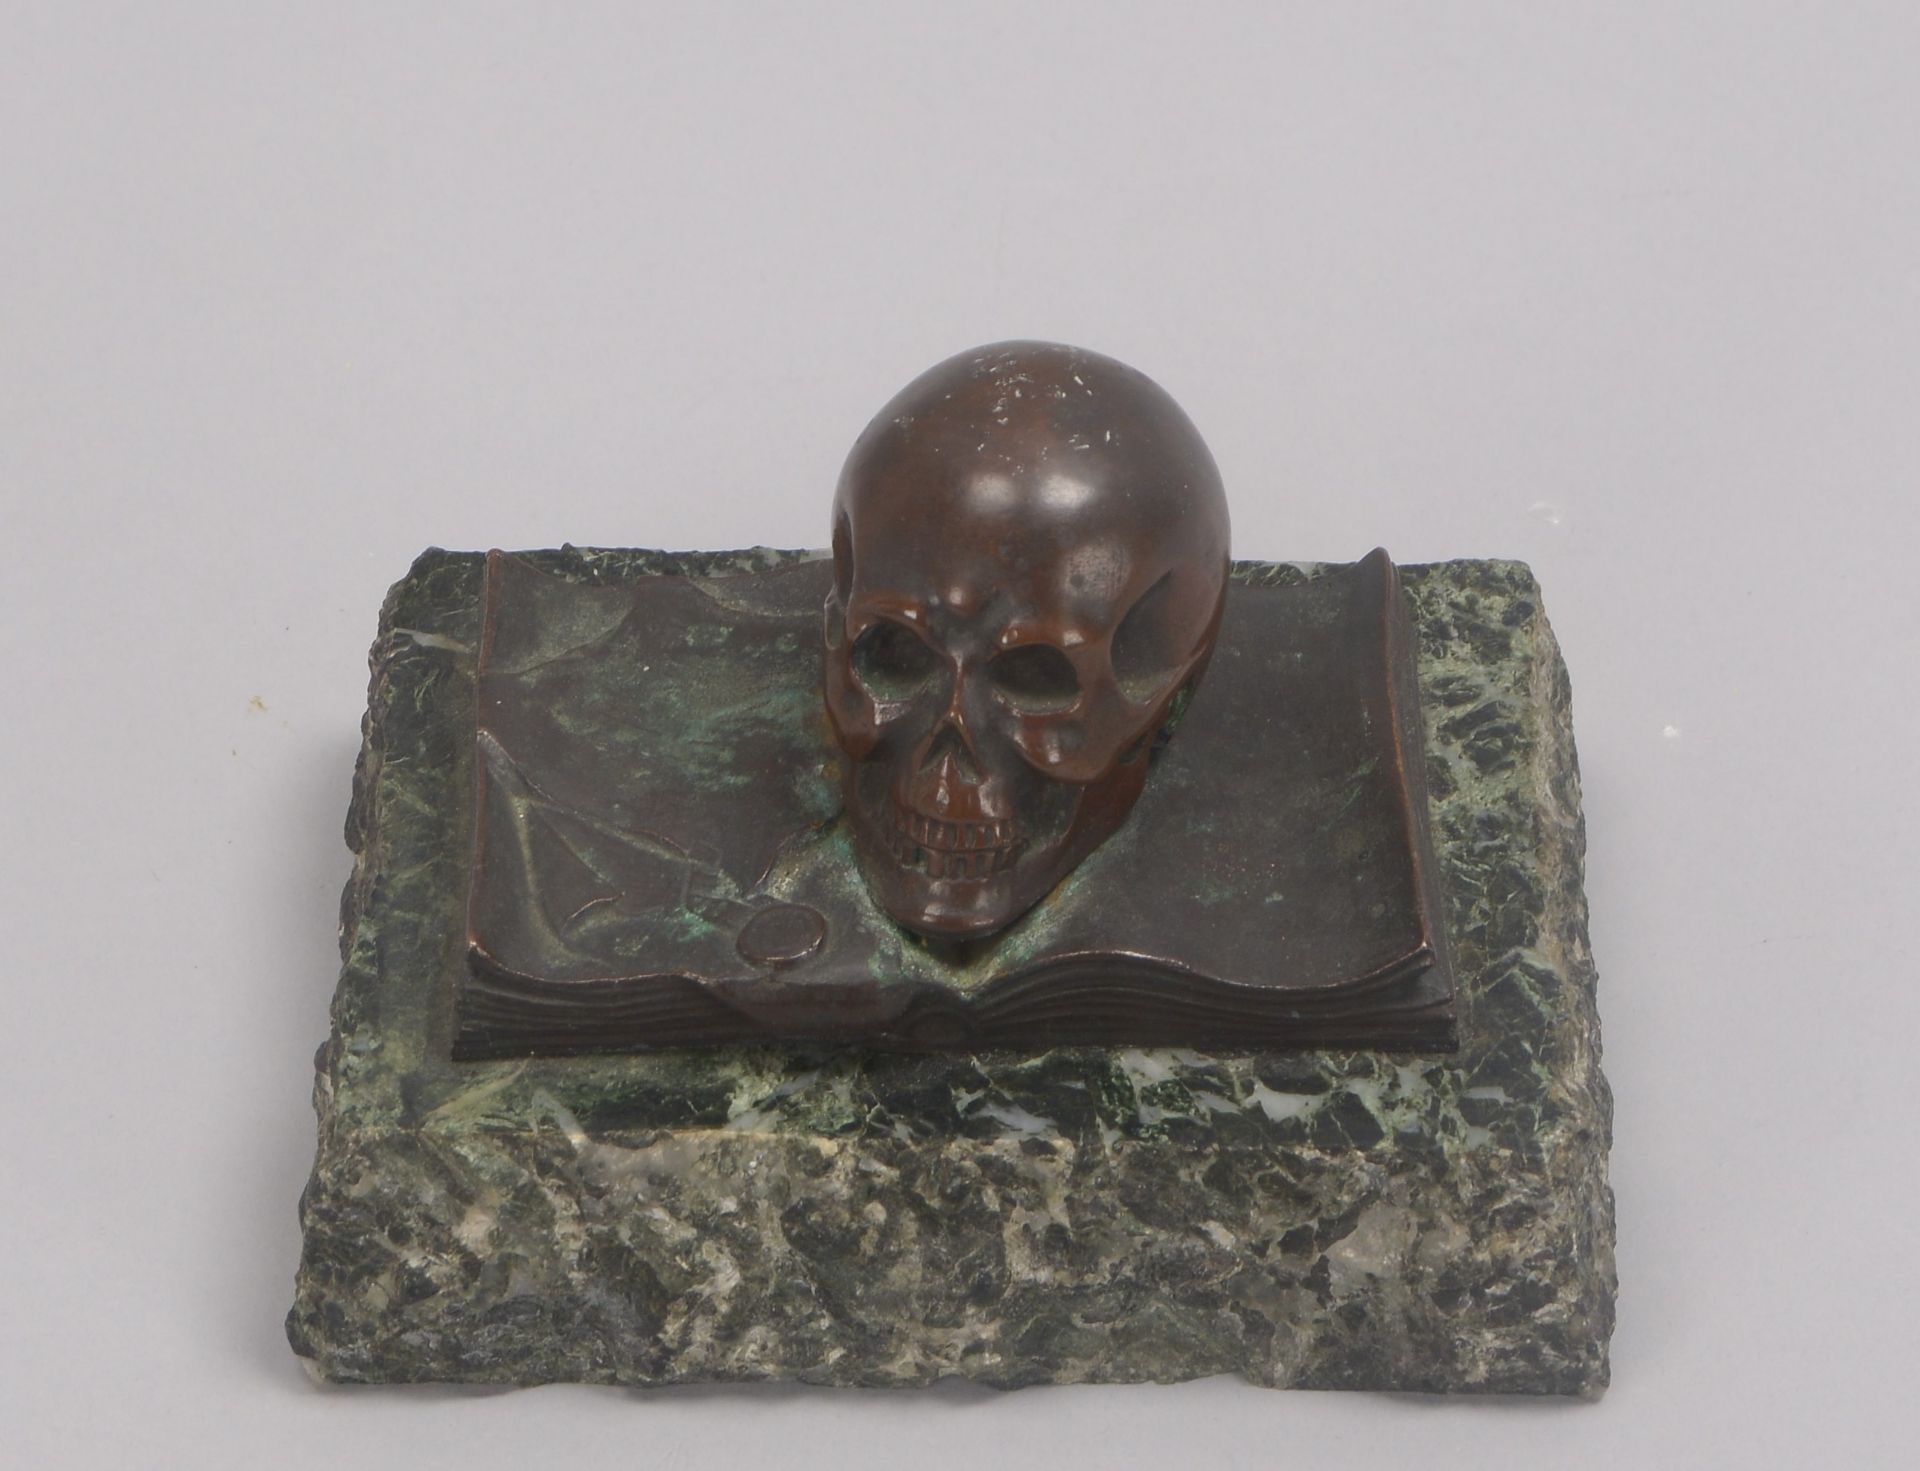 Tischskulptur, Bronze, 'Totenkopf' (mit Schreibfeder auf aufgeschlagenem Buch dargestellt), auf Marm - Bild 2 aus 2